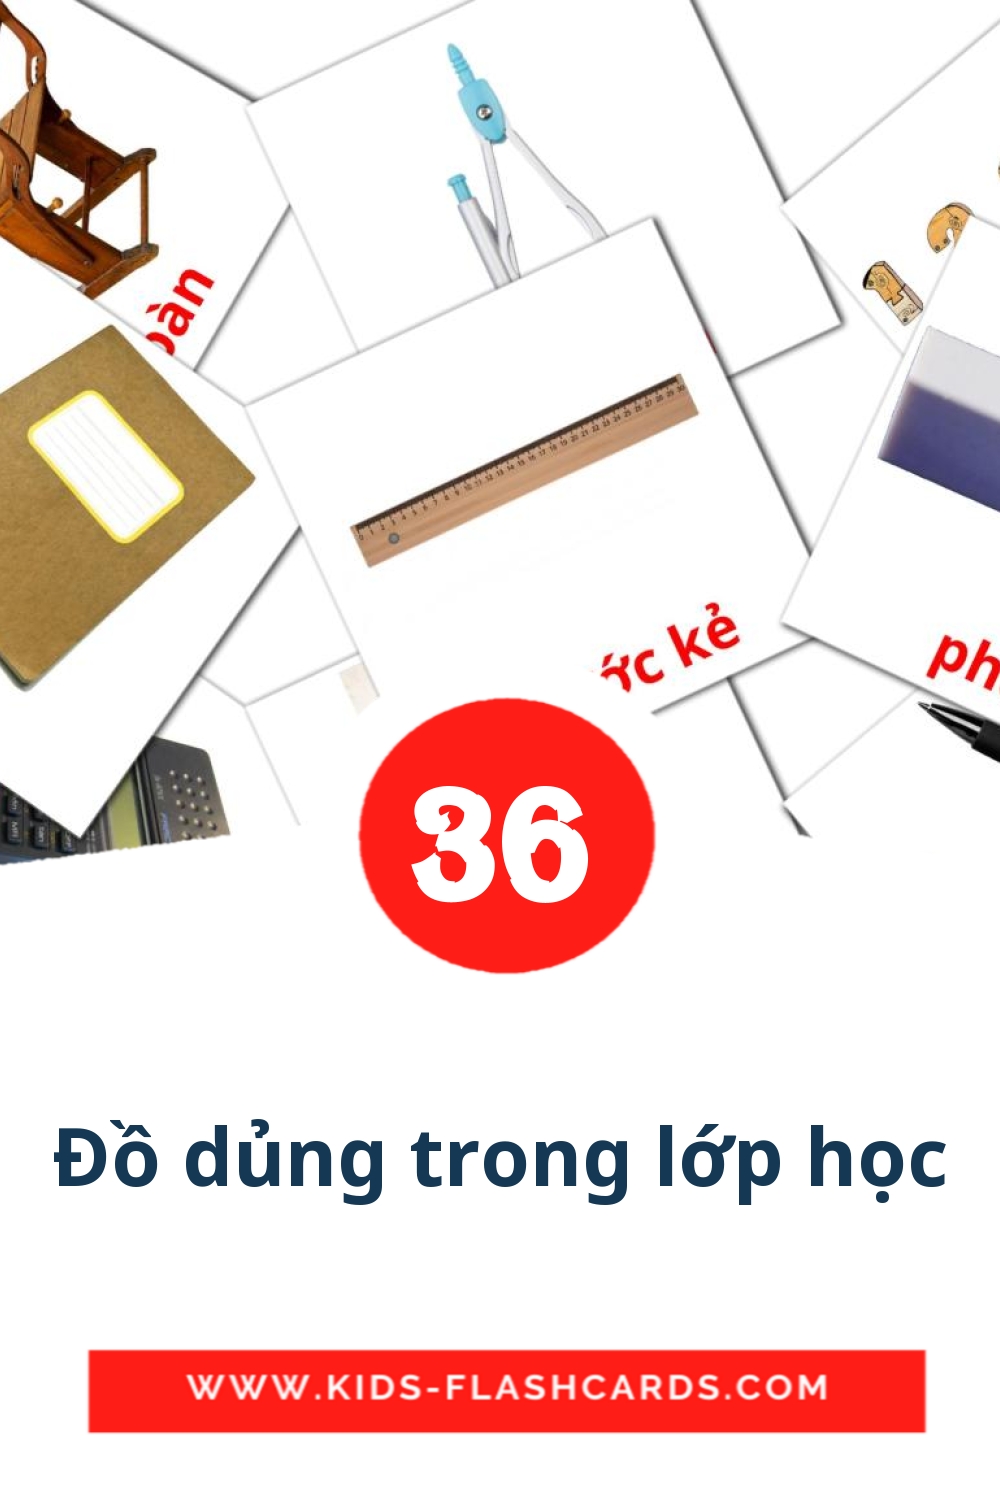 36 cartes illustrées de Đồ dủng trong lớp học pour la maternelle en vietnamien